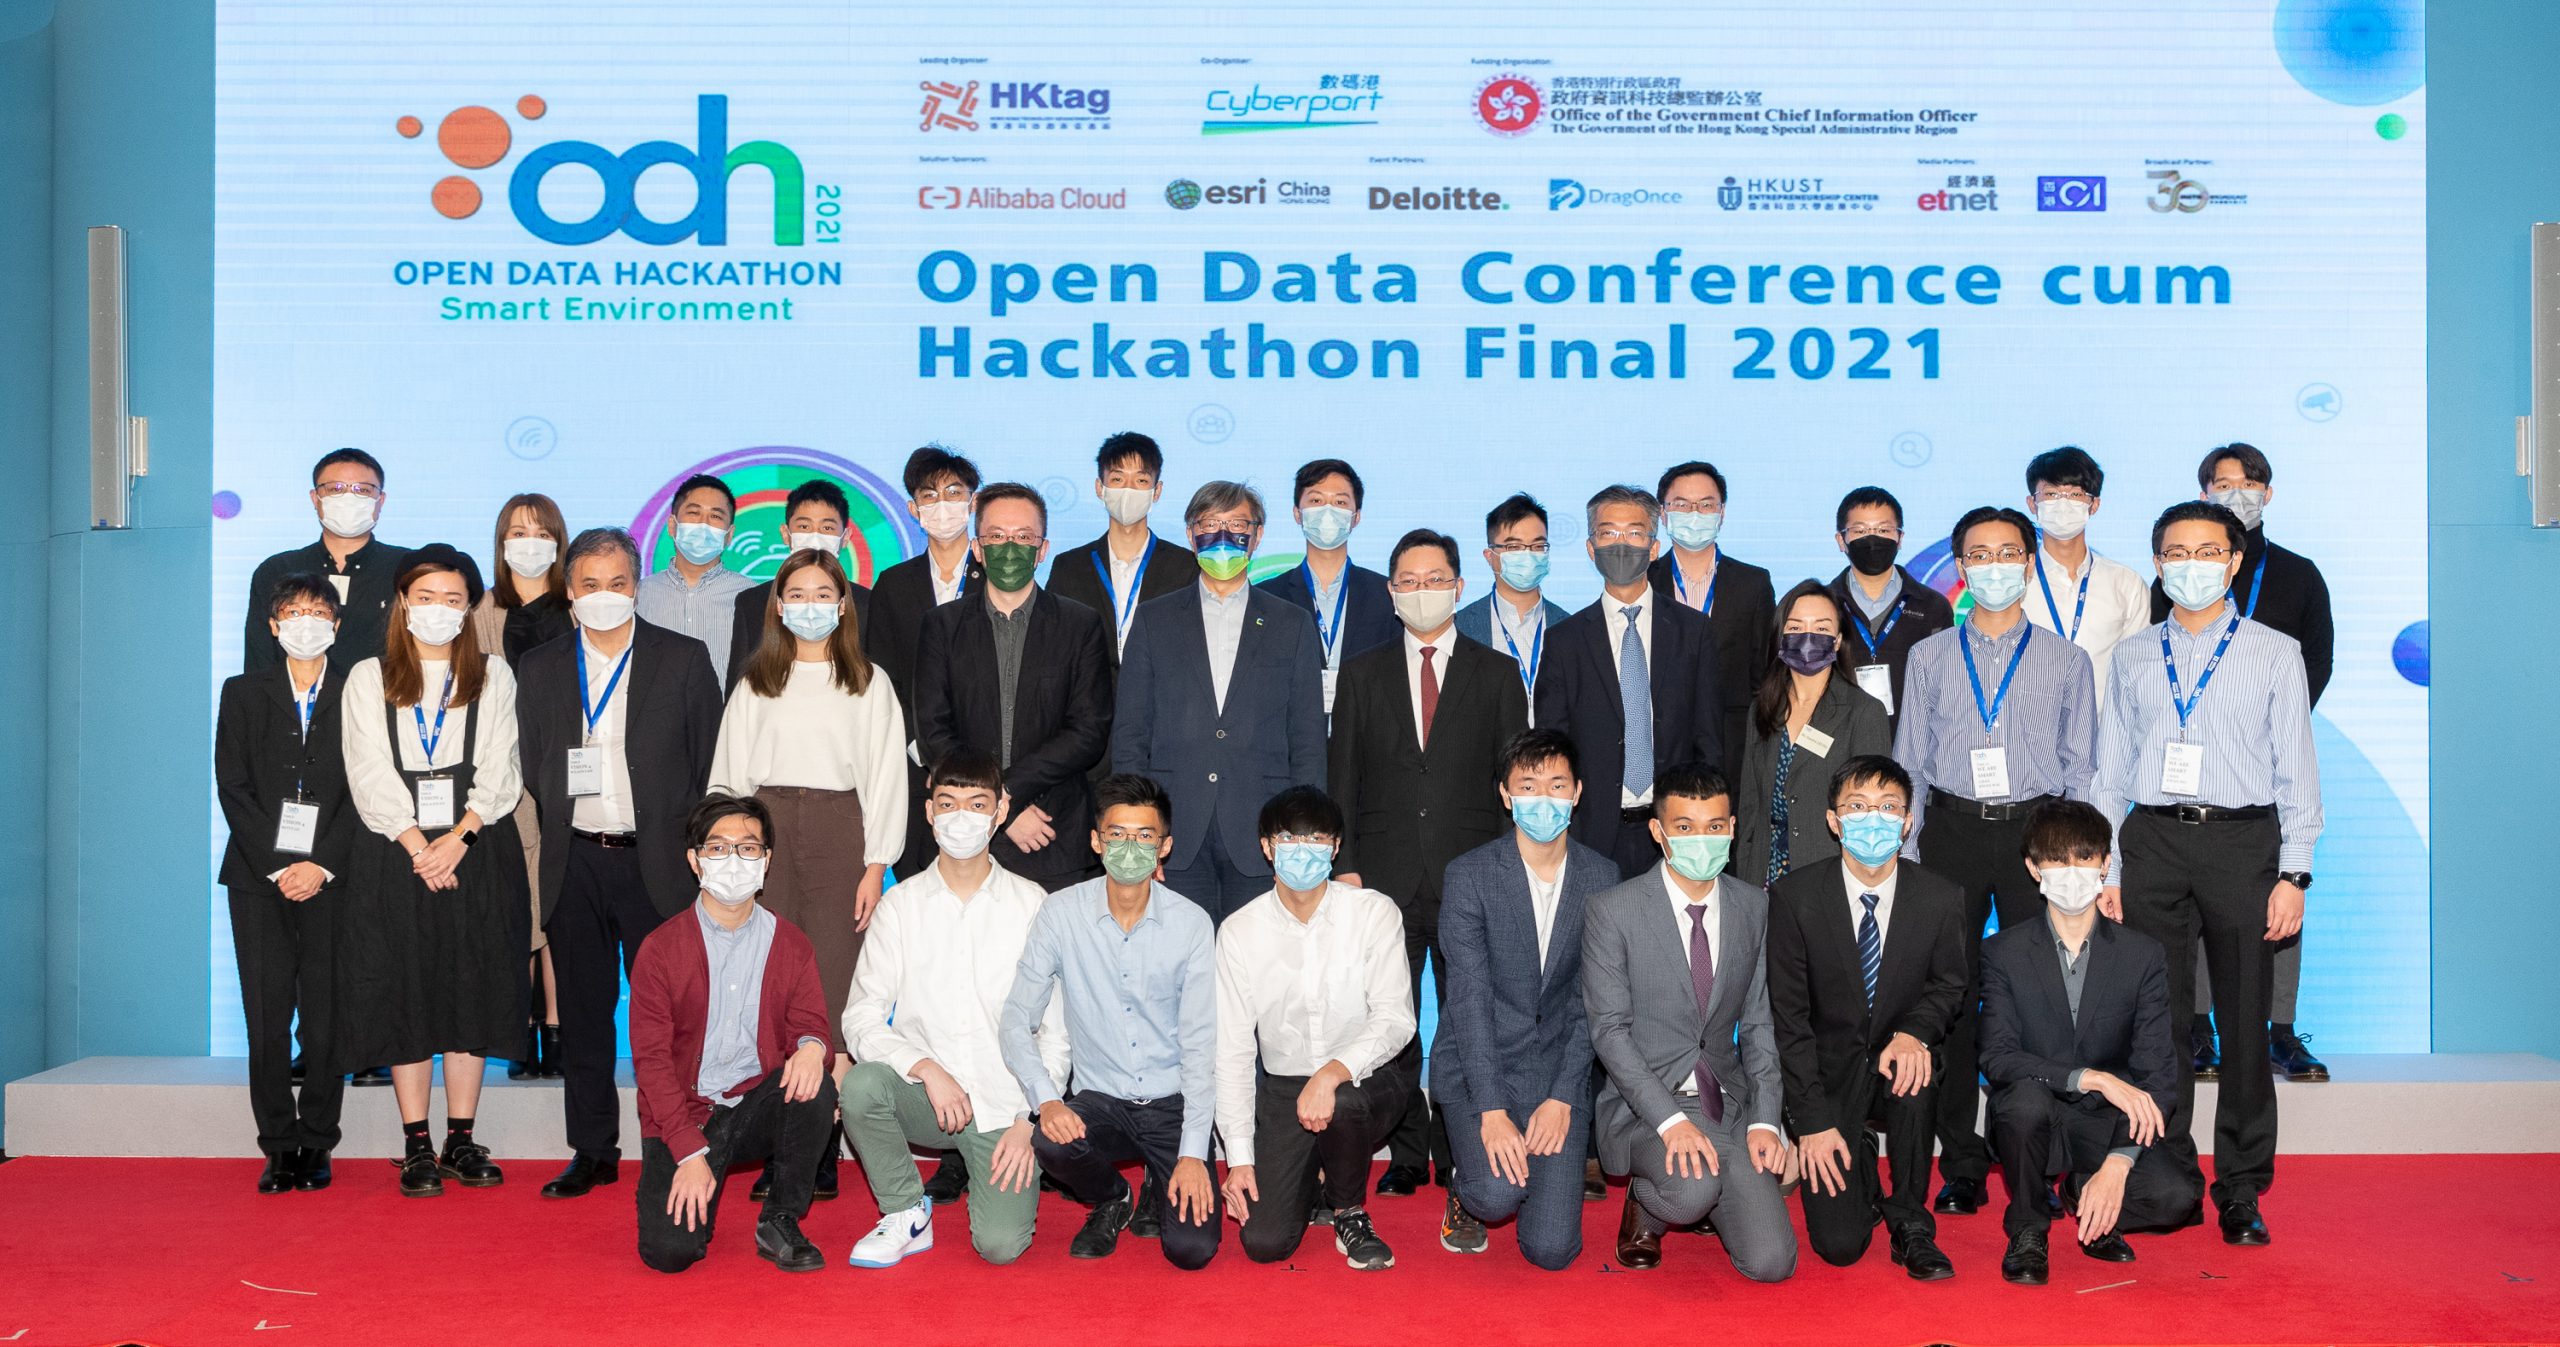 Open Data Conference cum Hackathon Final 2021